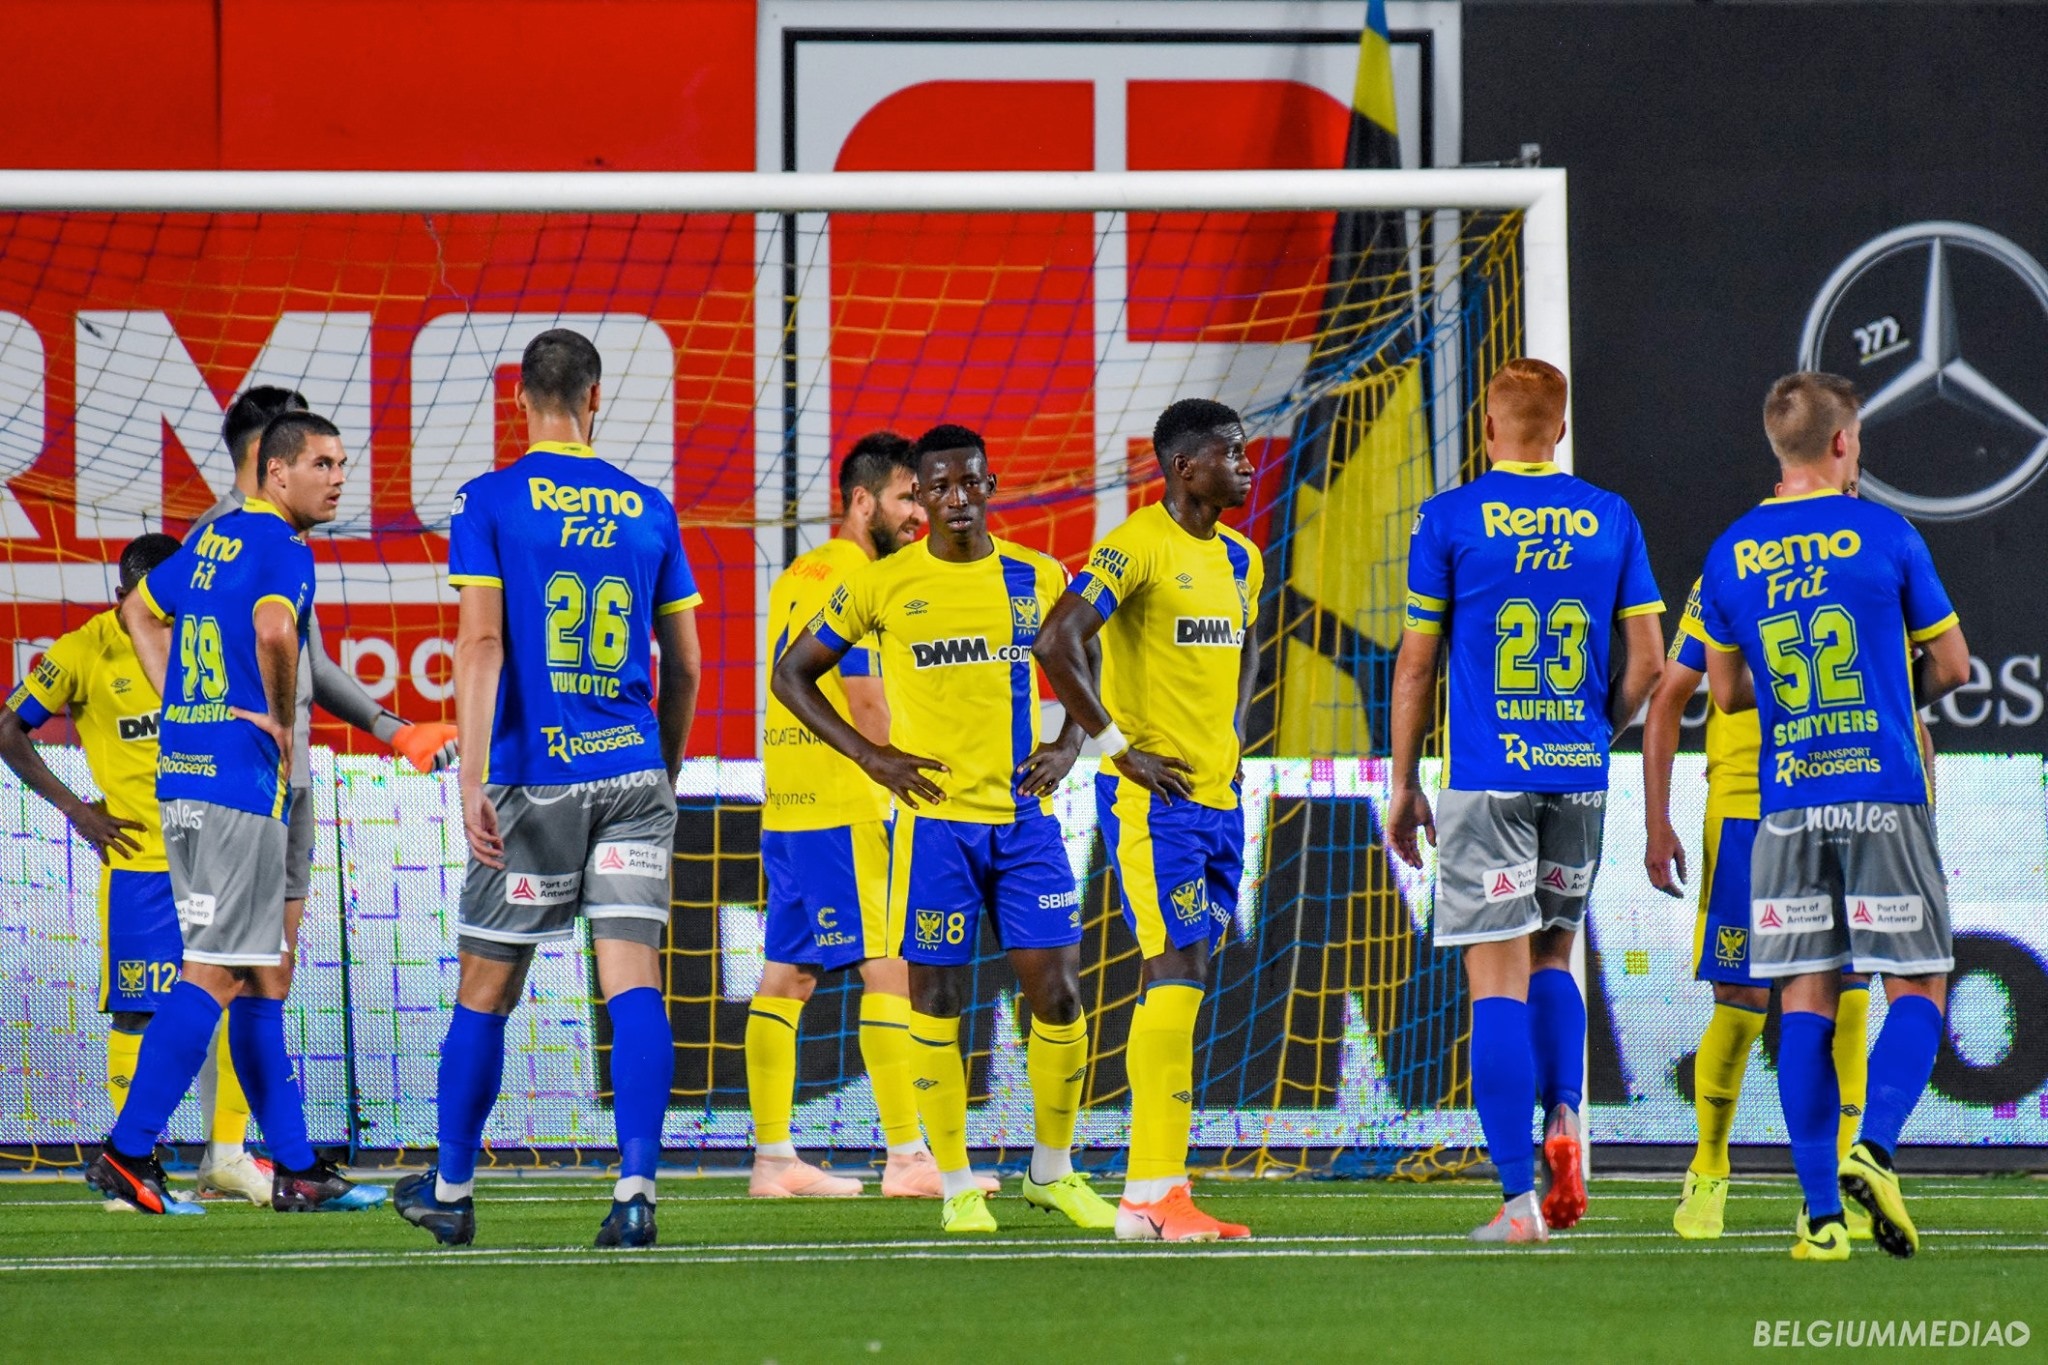 Sint-Truidense hòa may mắn đội cuối bảng nhờ bàn thắng phút bù giờ